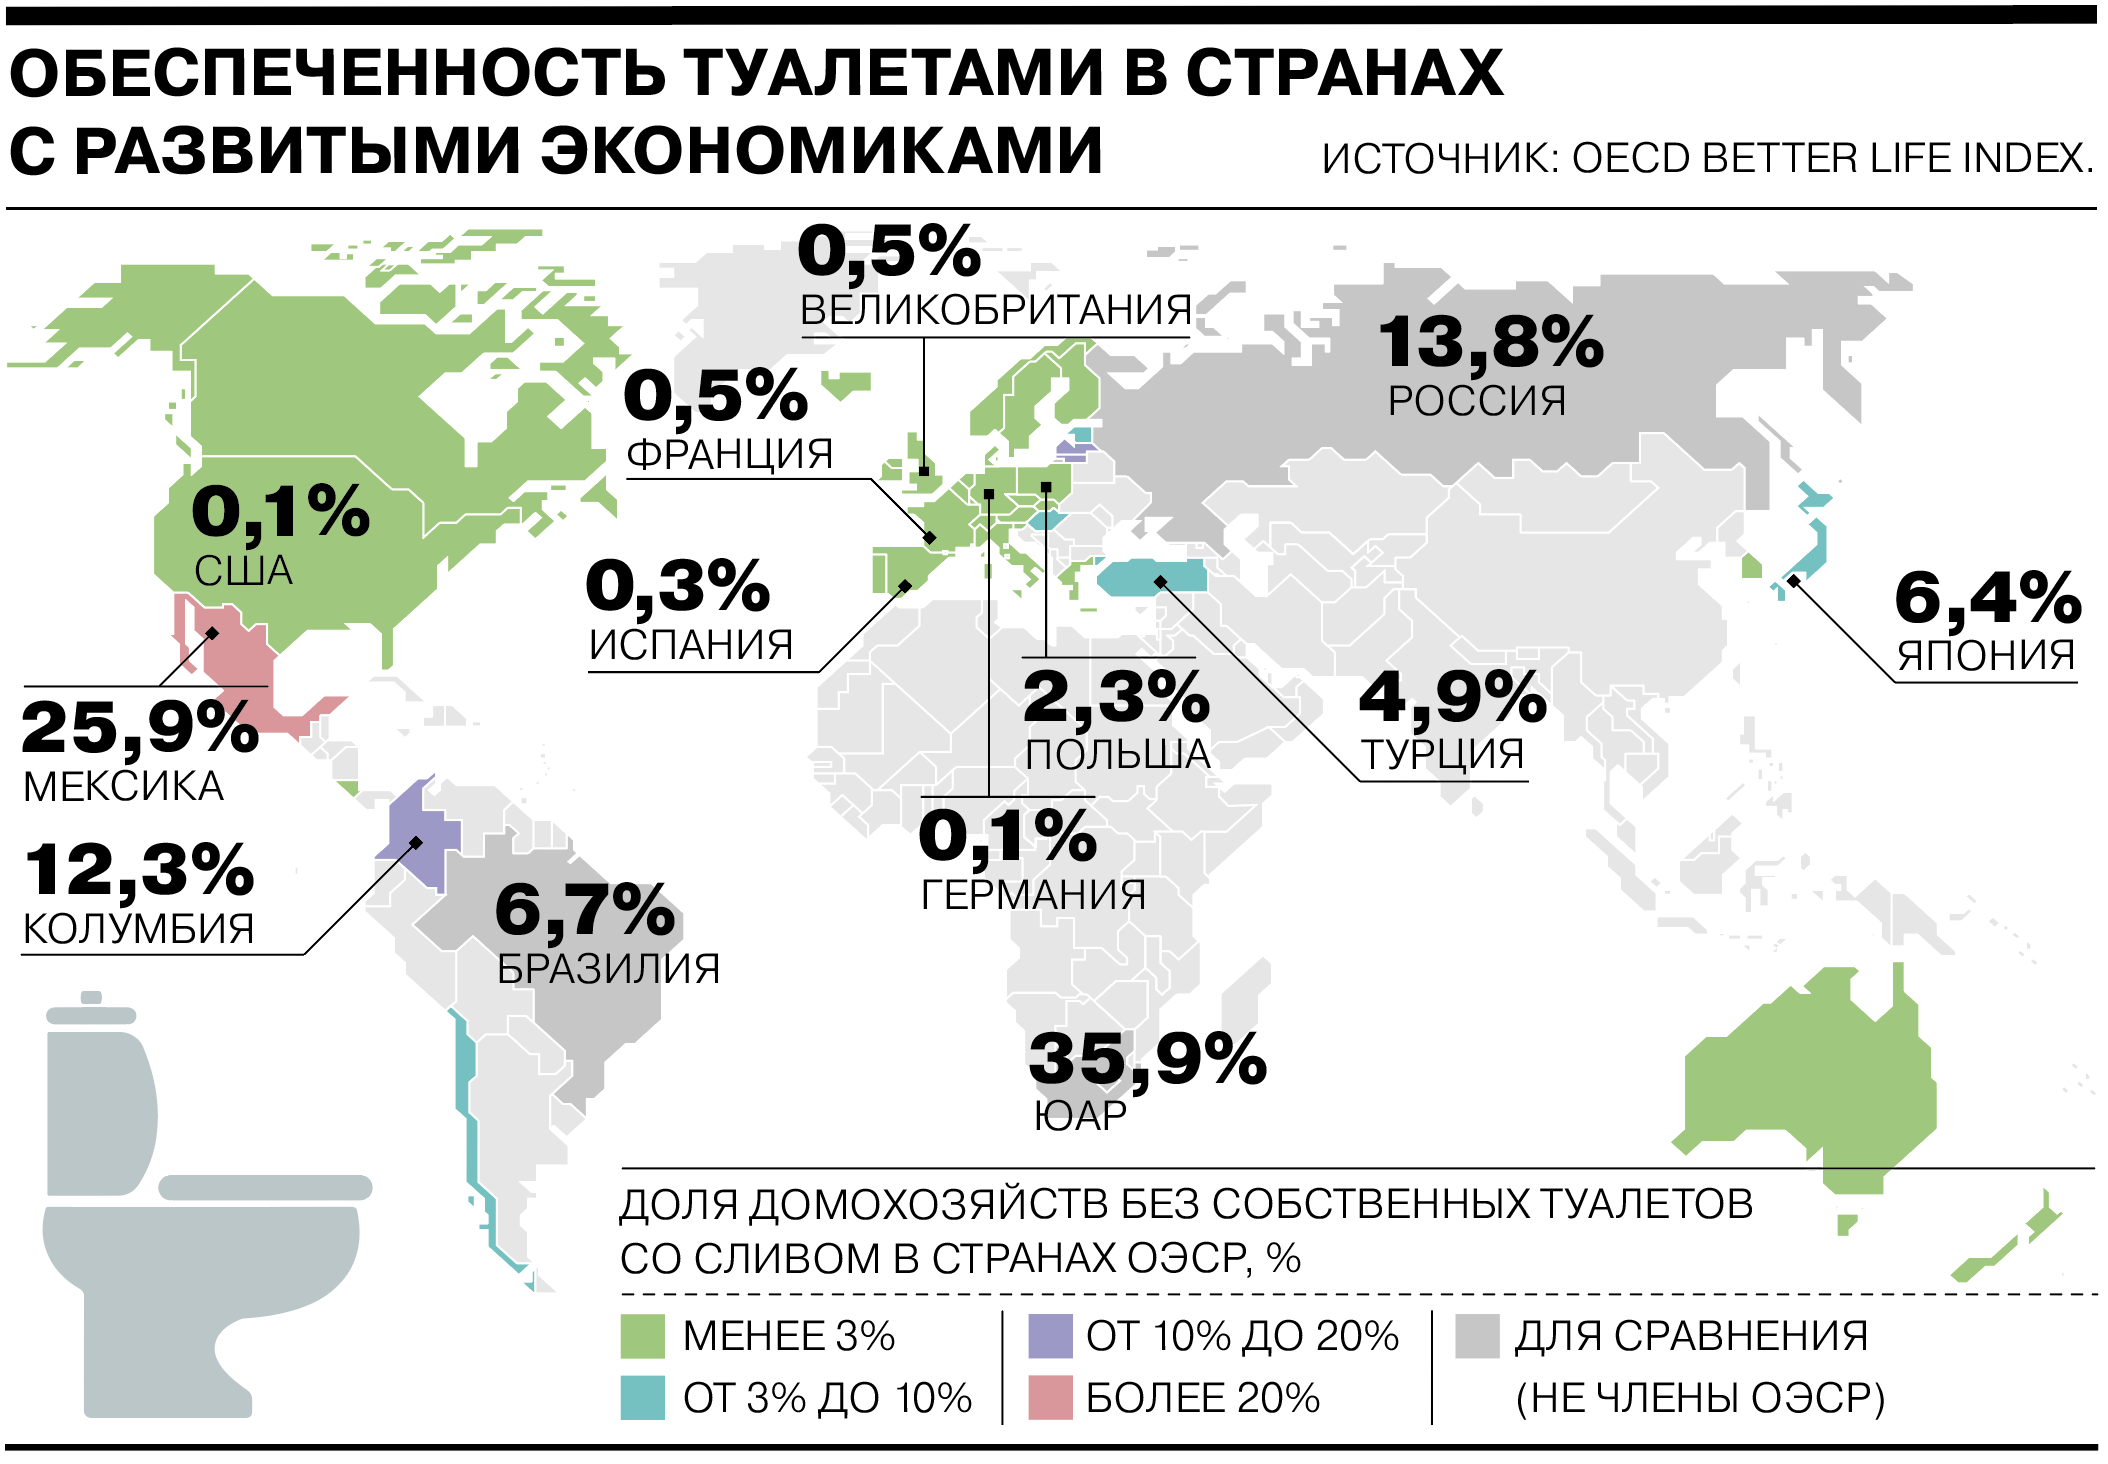 Сколько совершеннолетних в россии. Обеспеченность туалетами в мире. Туалеты в разных странах. Обстановка в мире на сегодняшний день.